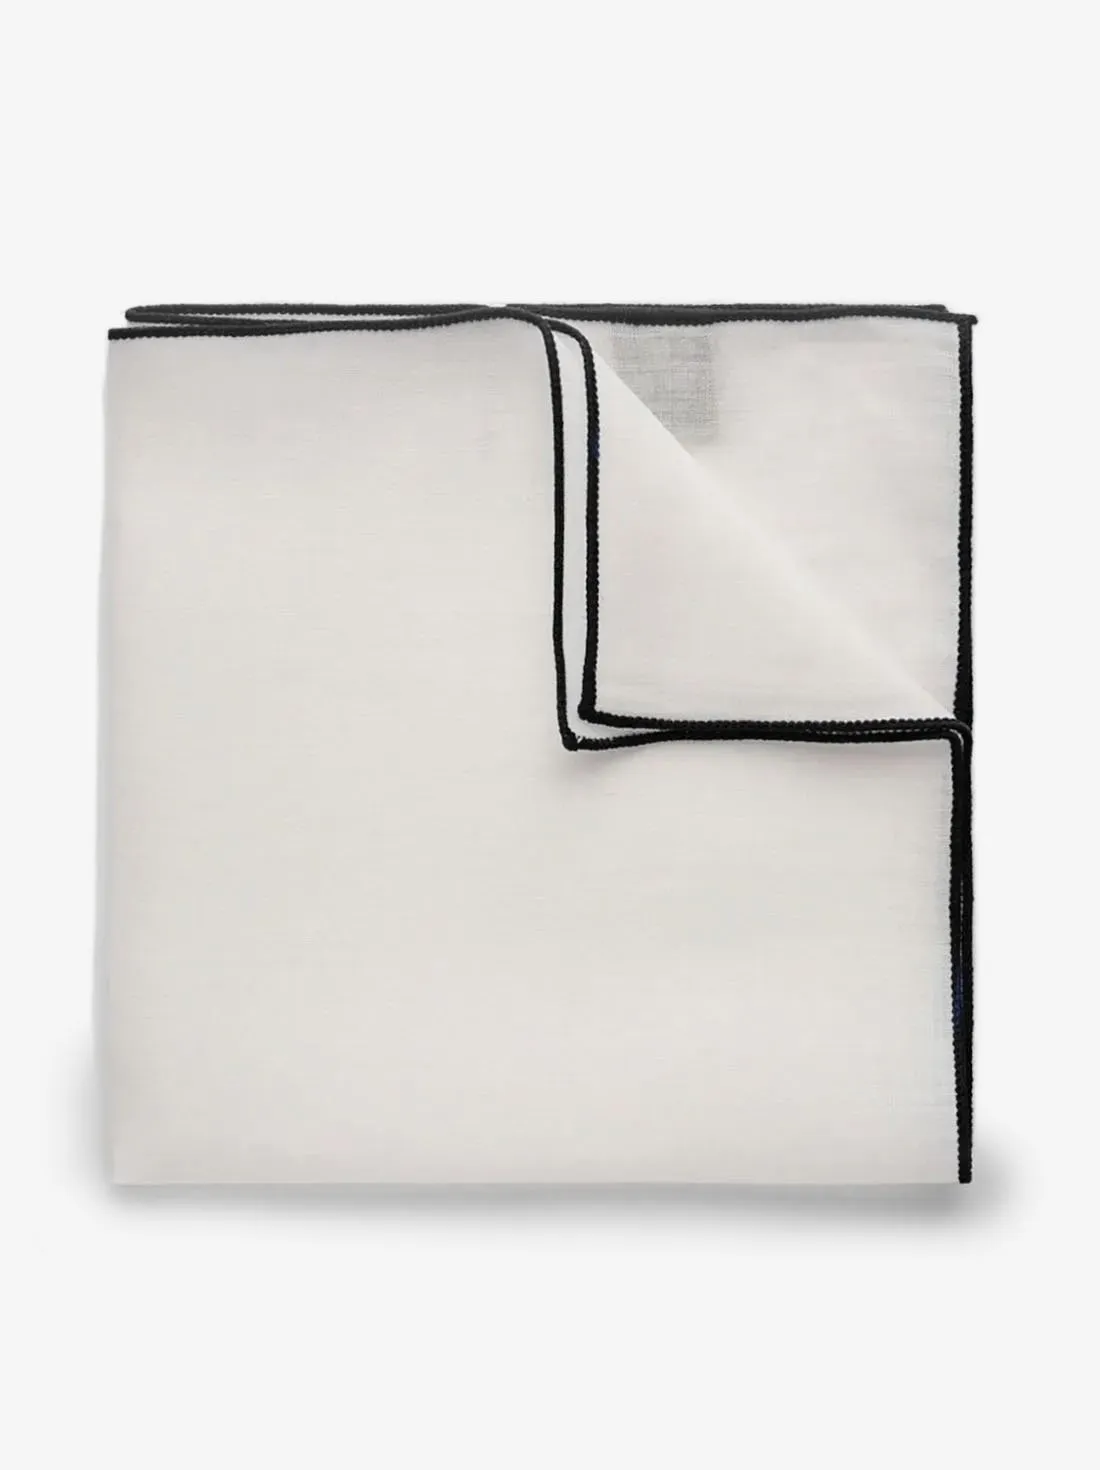 Black & White Pocket Square Linen